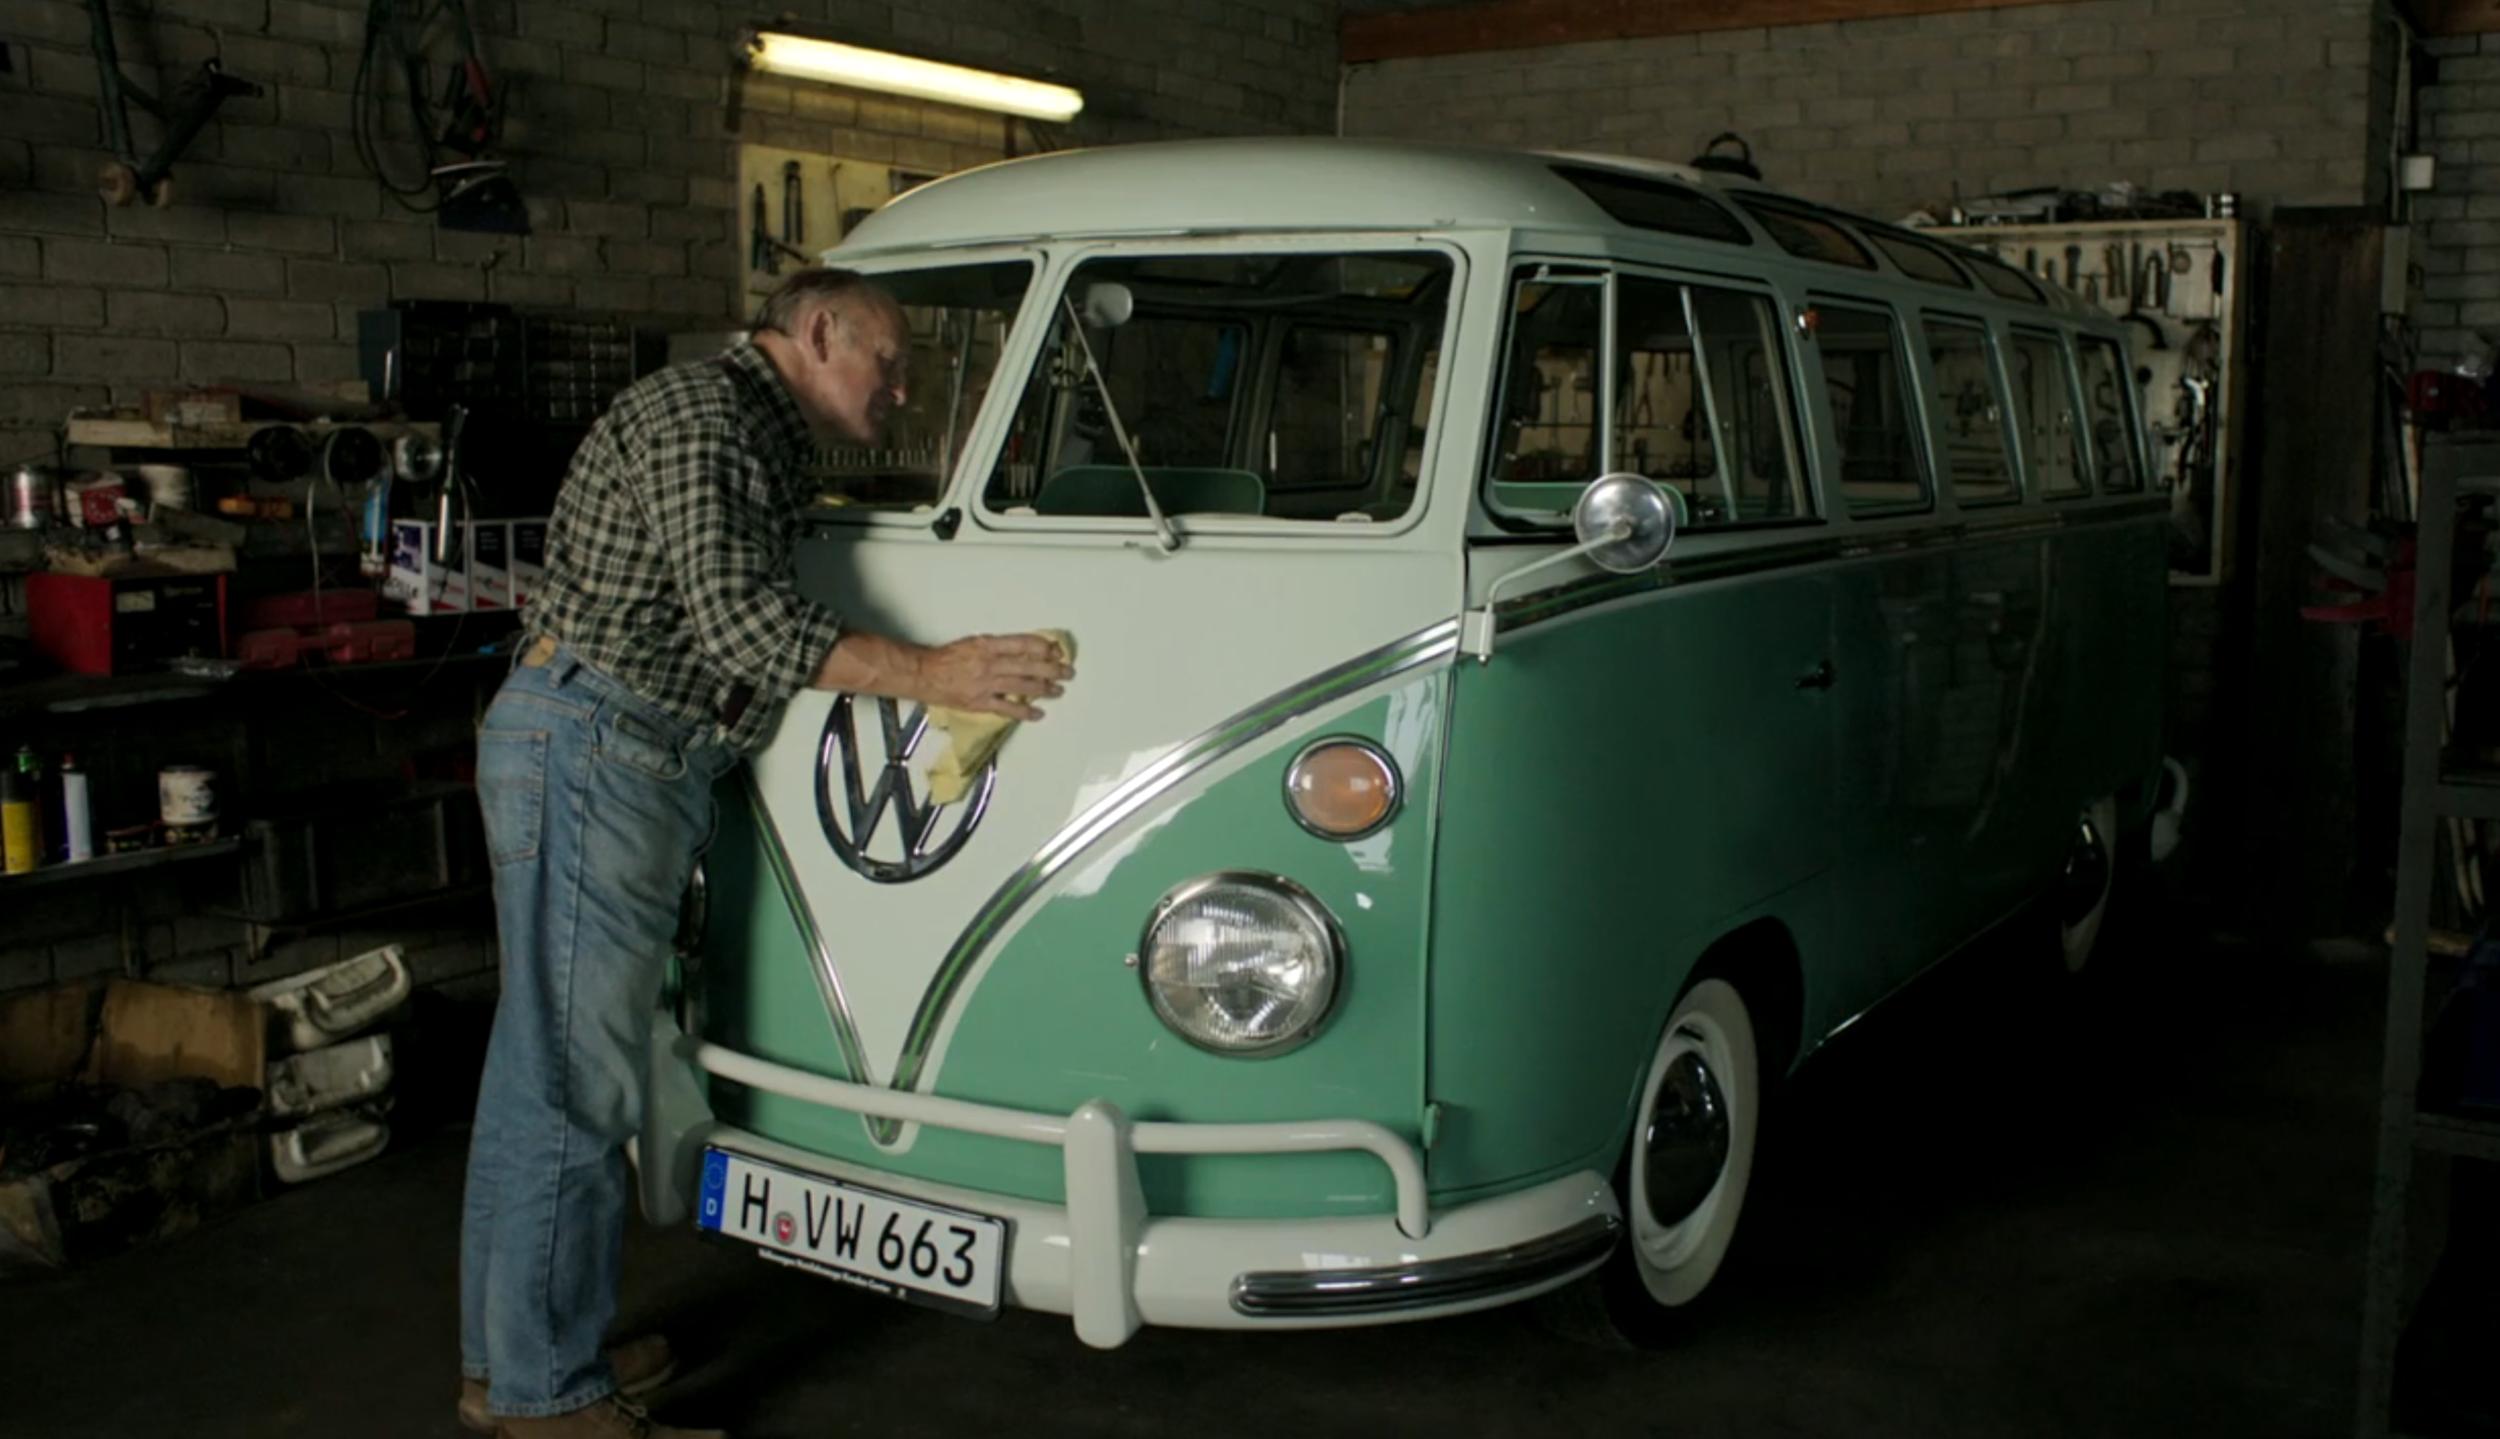 VW Transporter "Loved" (TV Commercial)